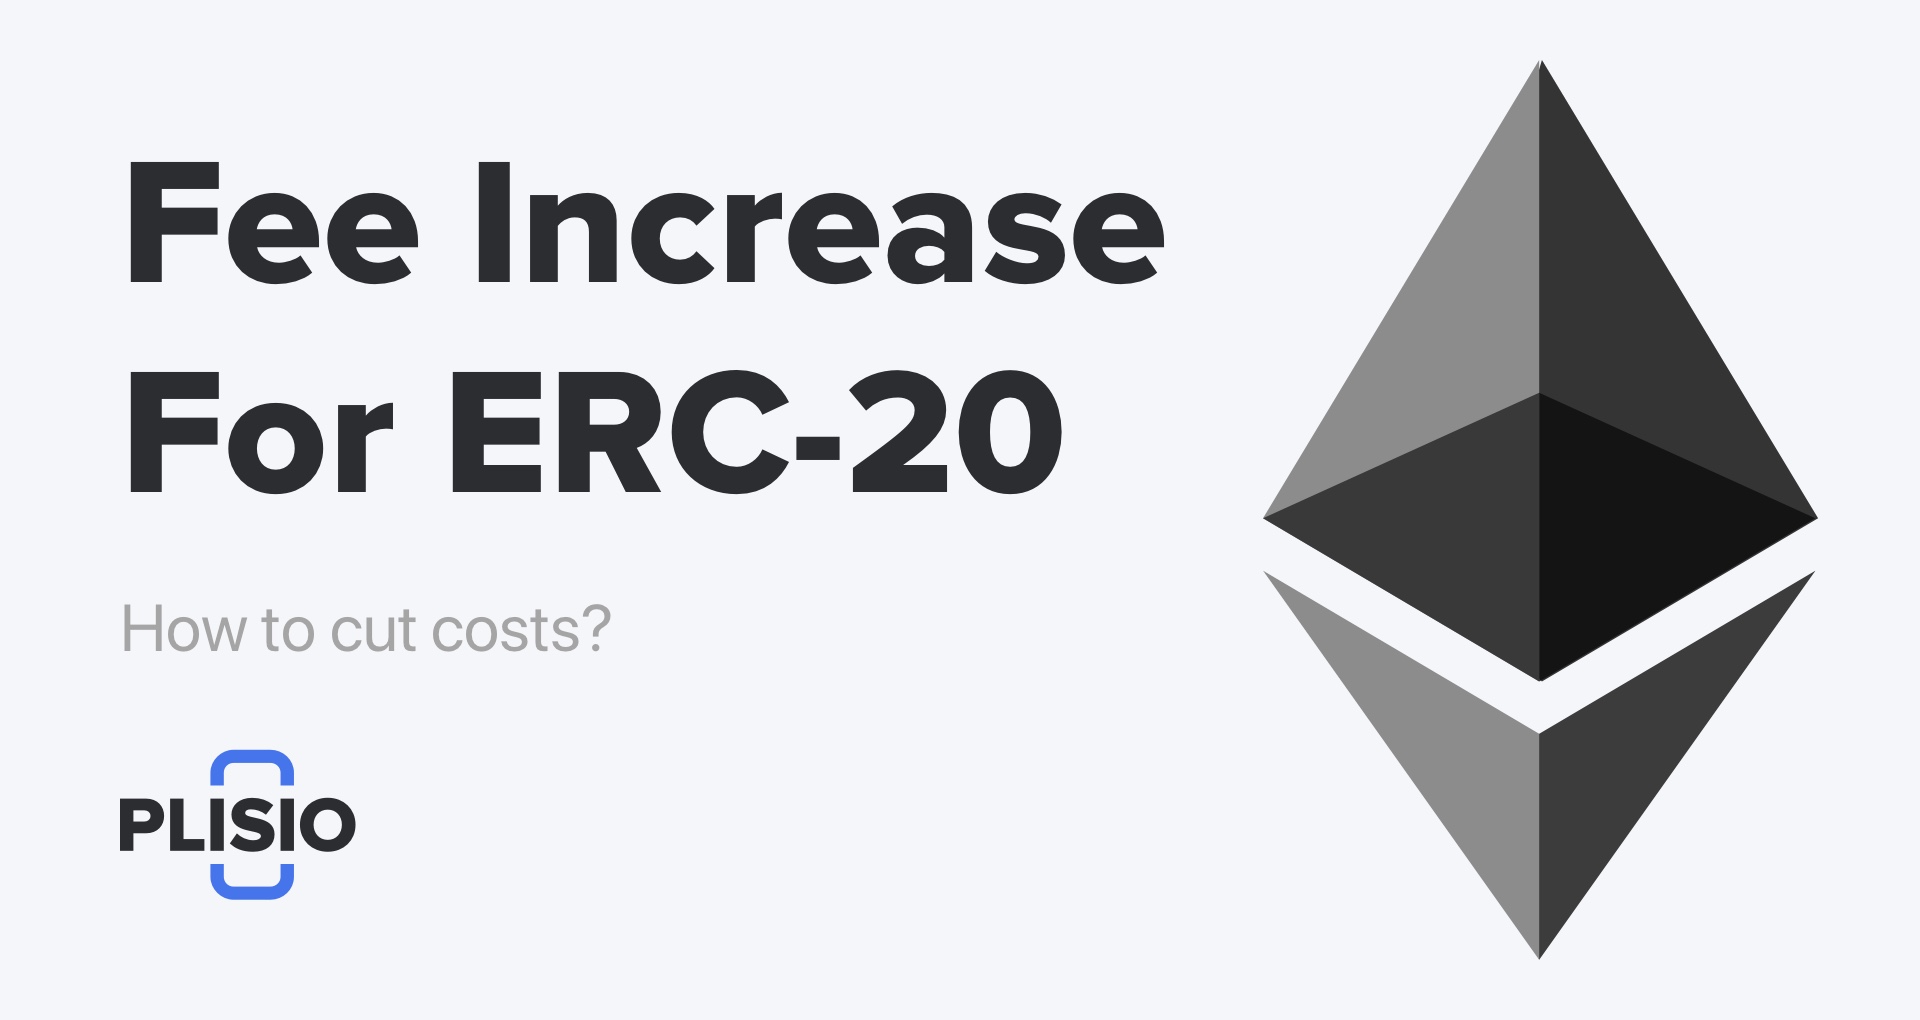 以太坊和 ERC-20 代币的费用增加。如何削减成本？